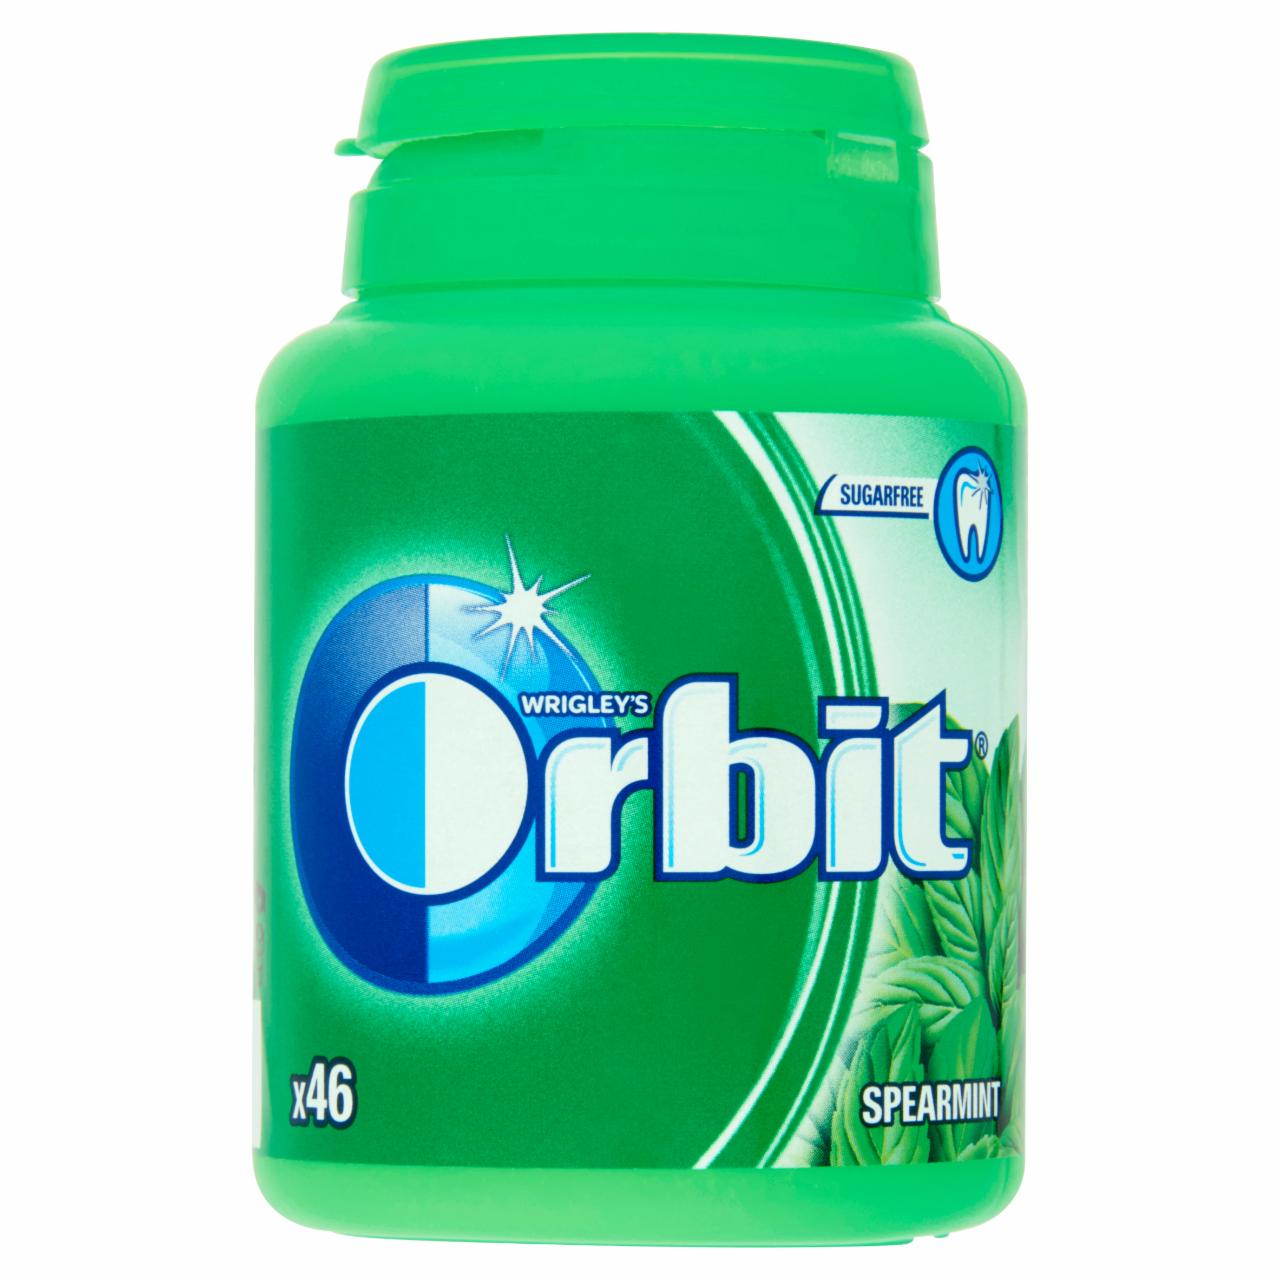 Képek - Orbit Spearmint mentaízű cukormentes rágógumi édesítőszerrel 64 g